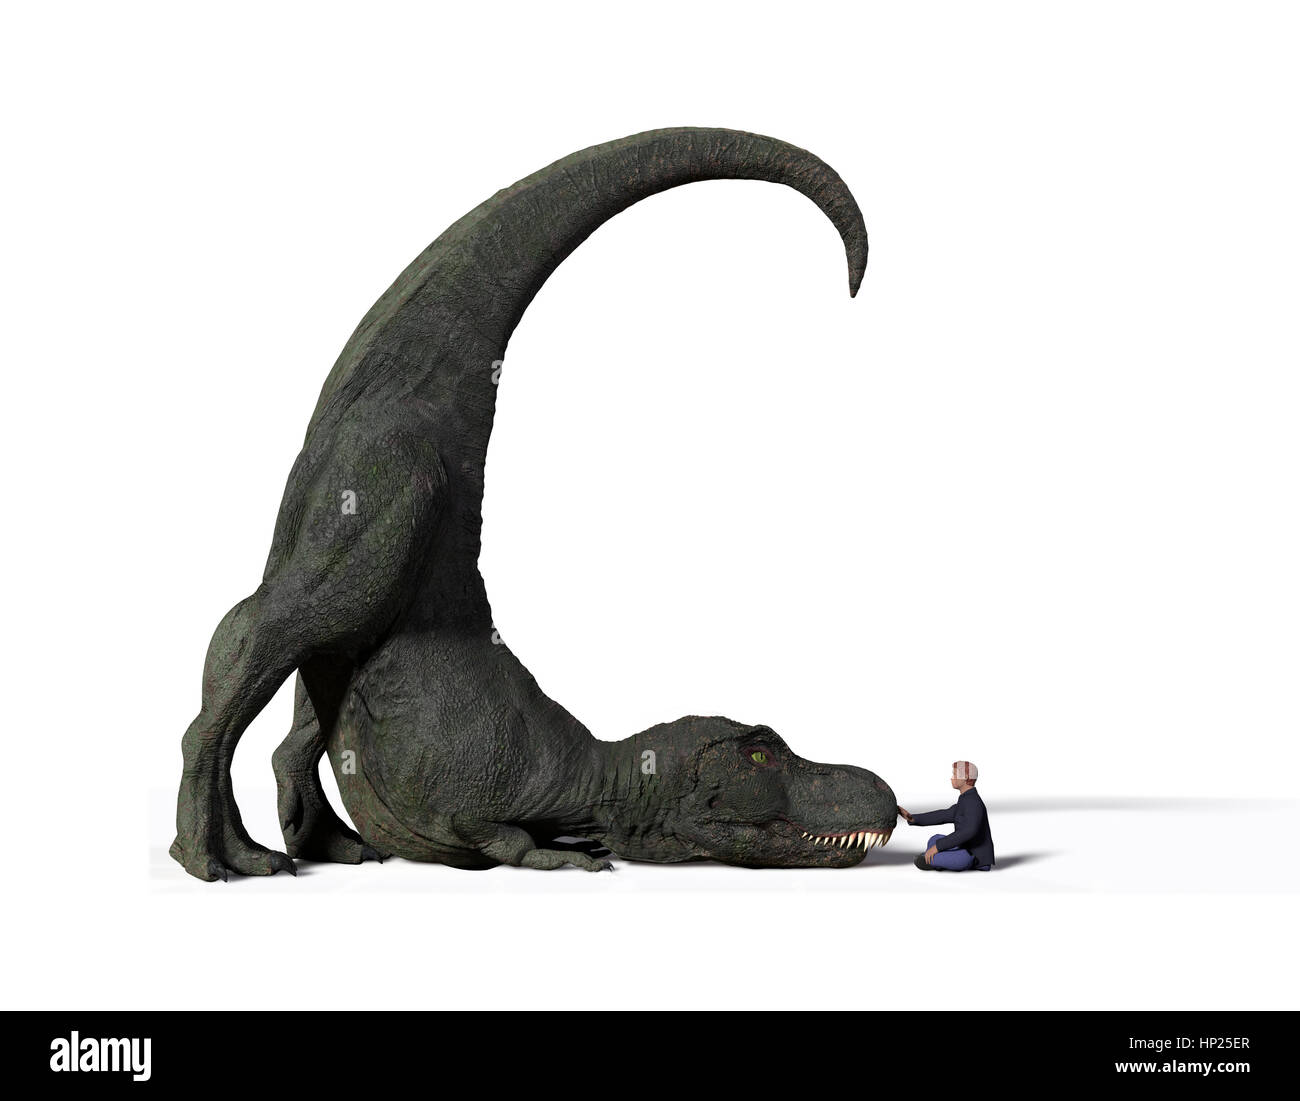 Vergleich der Größe von einem Erwachsenen Tyrannosaurus Rex Dinosaurier aus der Jurazeit und eine 1,8 m Mensch (Homo Sapiens), 3d illustration Stockfoto